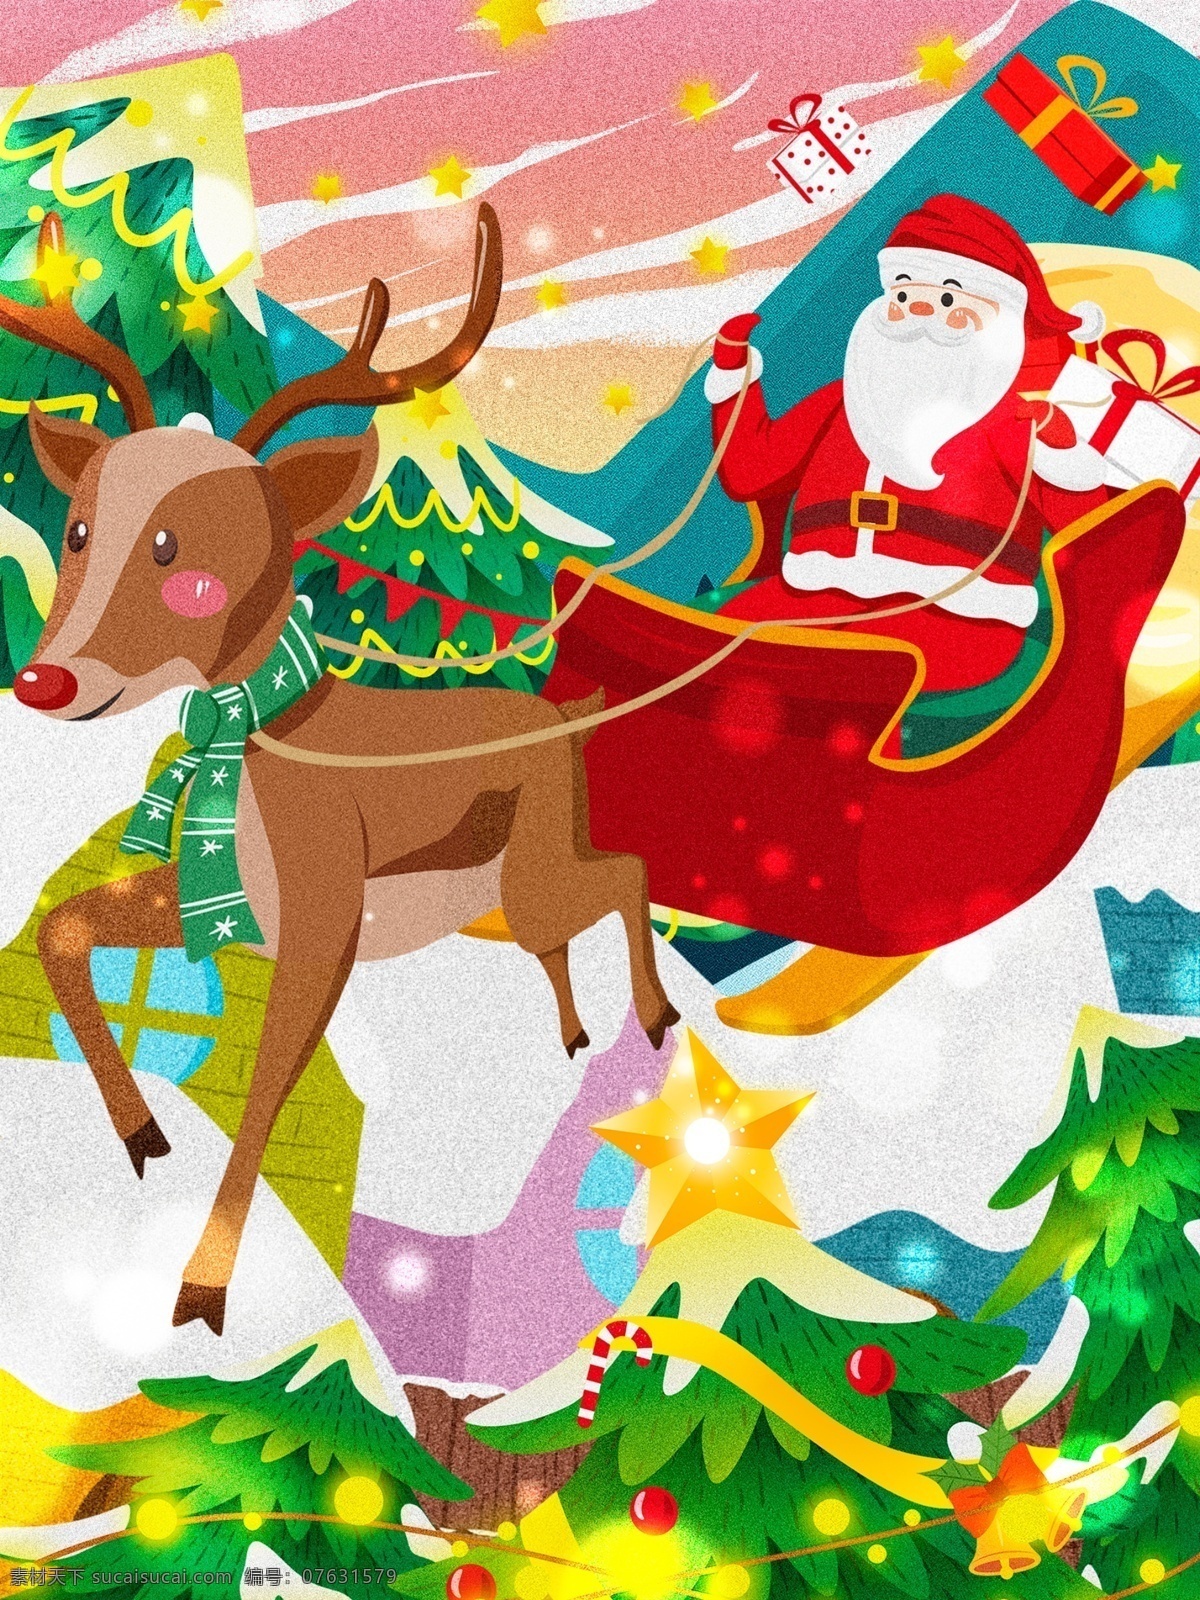 圣诞节 圣诞老人 驯鹿 雪橇 车 送礼 圣诞树 插画 唯美 星星 圣诞节插画 西方节日 彩灯 唯美圣诞节 欢度圣诞 平安夜 圣诞节快乐 过圣诞 圣诞礼物 merrychristmas 房屋